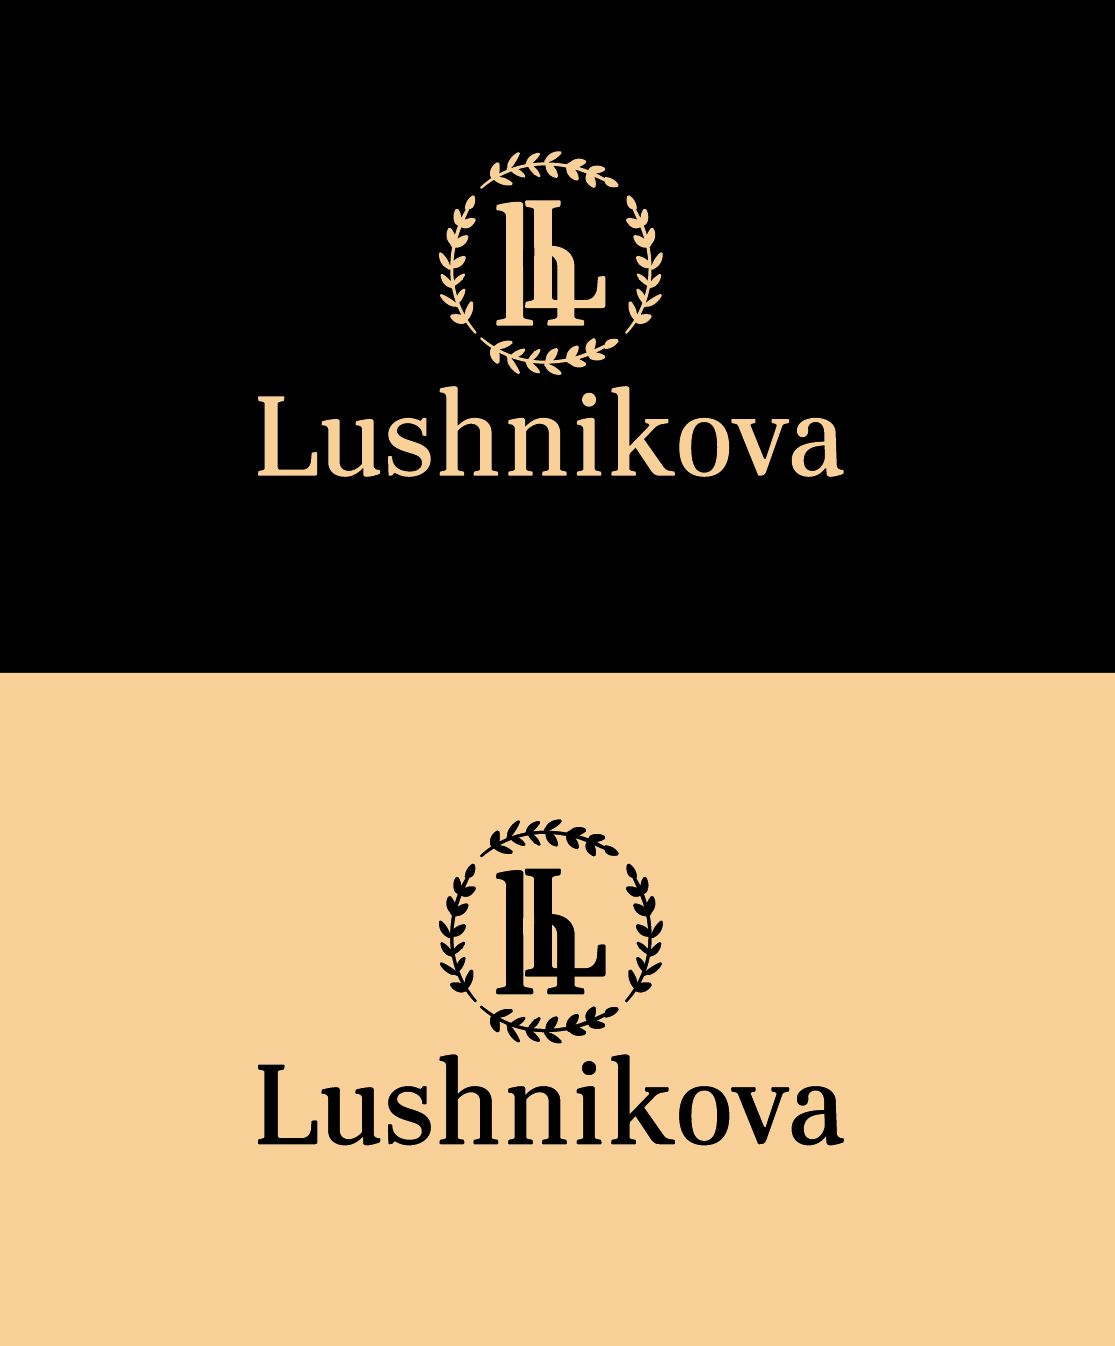 Лого и фирменный стиль для Lushnikova - дизайнер rikka46